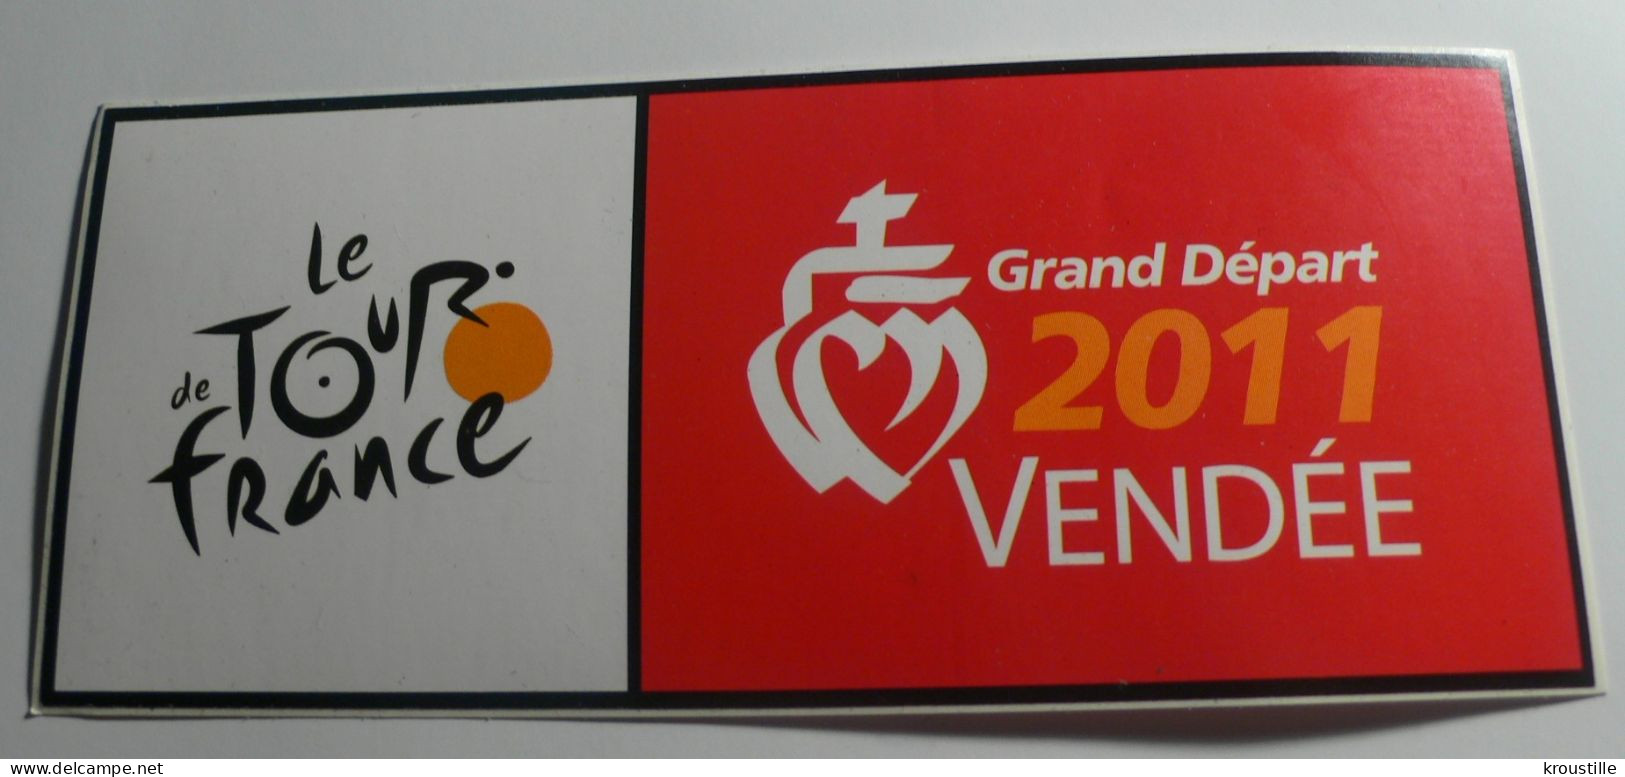 CYCLISME : AUTOCOLLANT LE TOUR DE FRANCE - GRAND DEPART 2011 VENDEE - Stickers